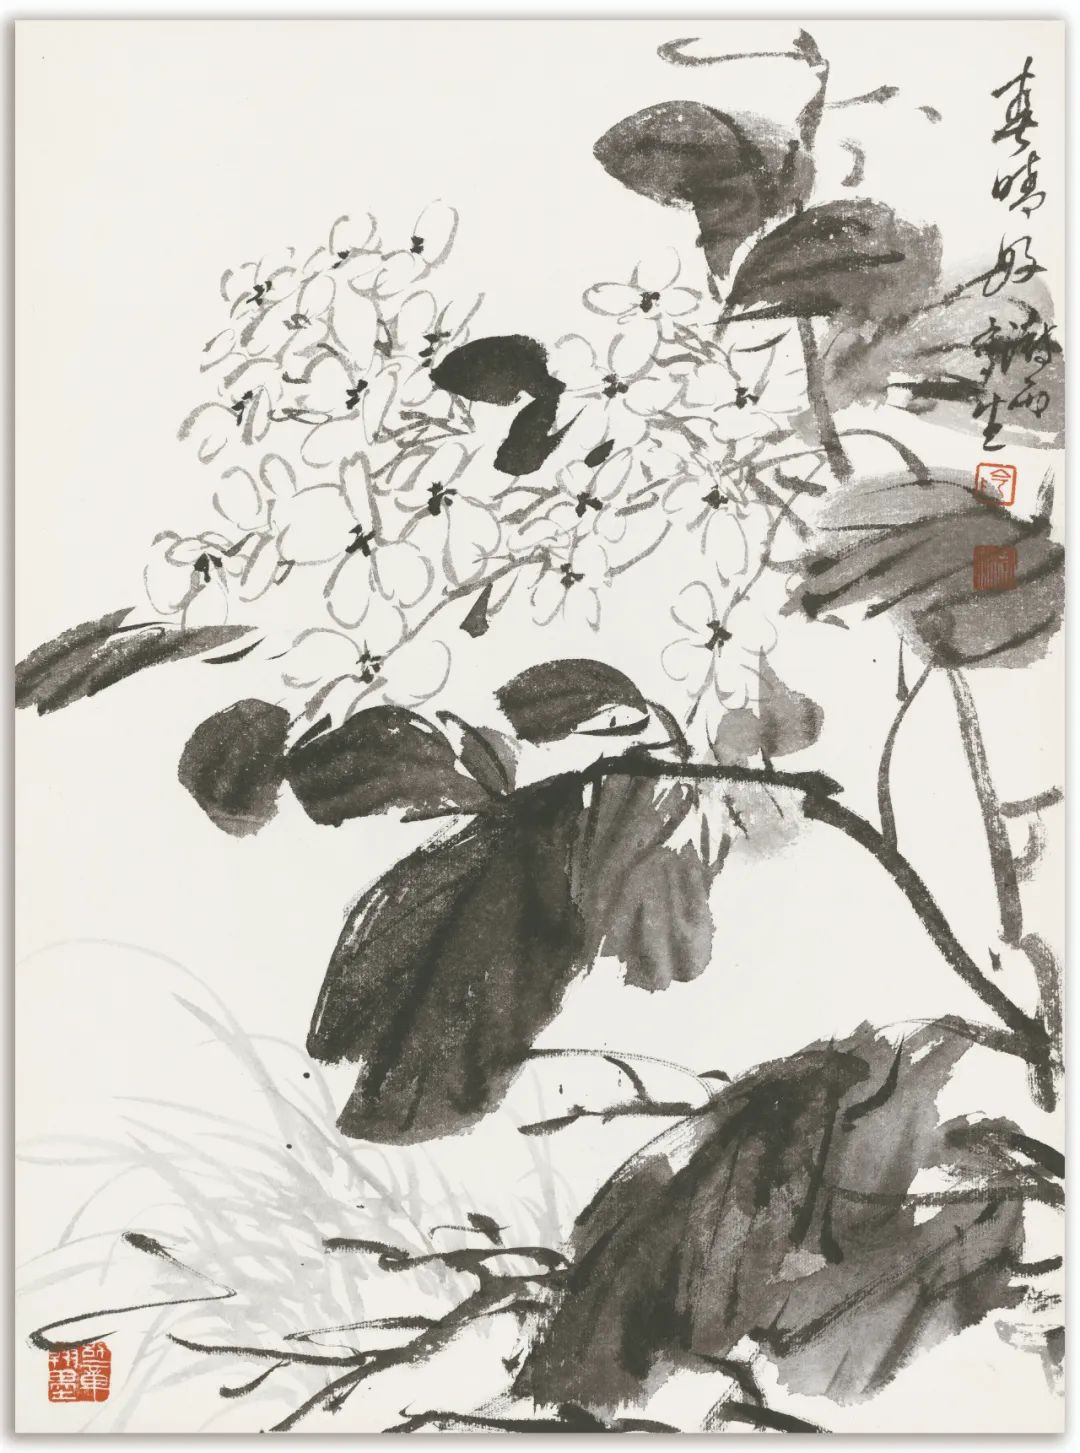 阴澎雨丨重思写意——70一代中国画学术研究邀请展